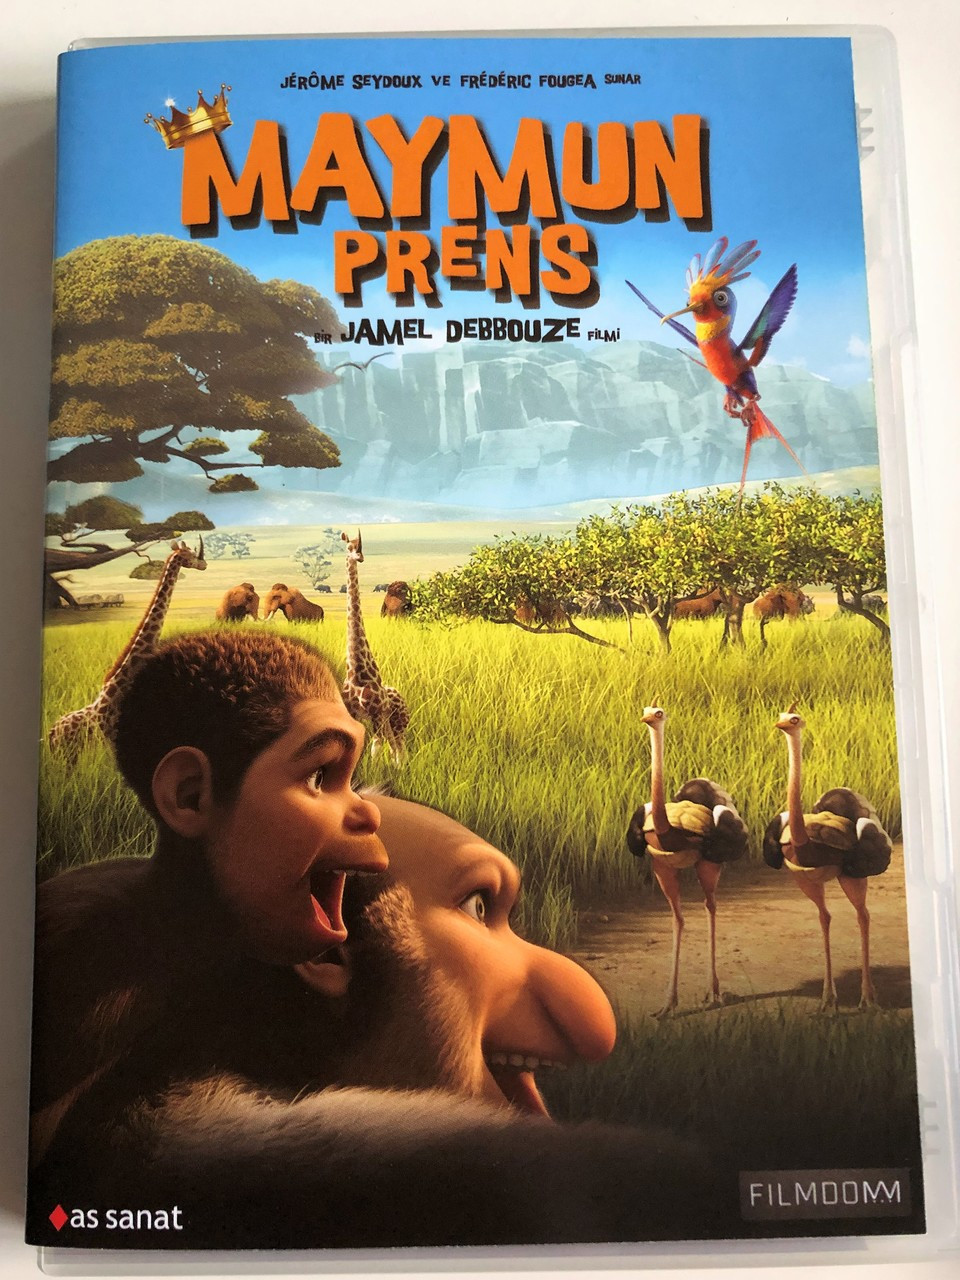 Maymun Prens DVD 2015 Pourquoi J'ai Pas Mangé Mon Père / Animal Kingdom:  Let's Go Ape / Directed by Jamel Debbouze / Written by Jérome Seydoux,  Frédéric Fougea / Animasyon / Animated film - bibleinmylanguage